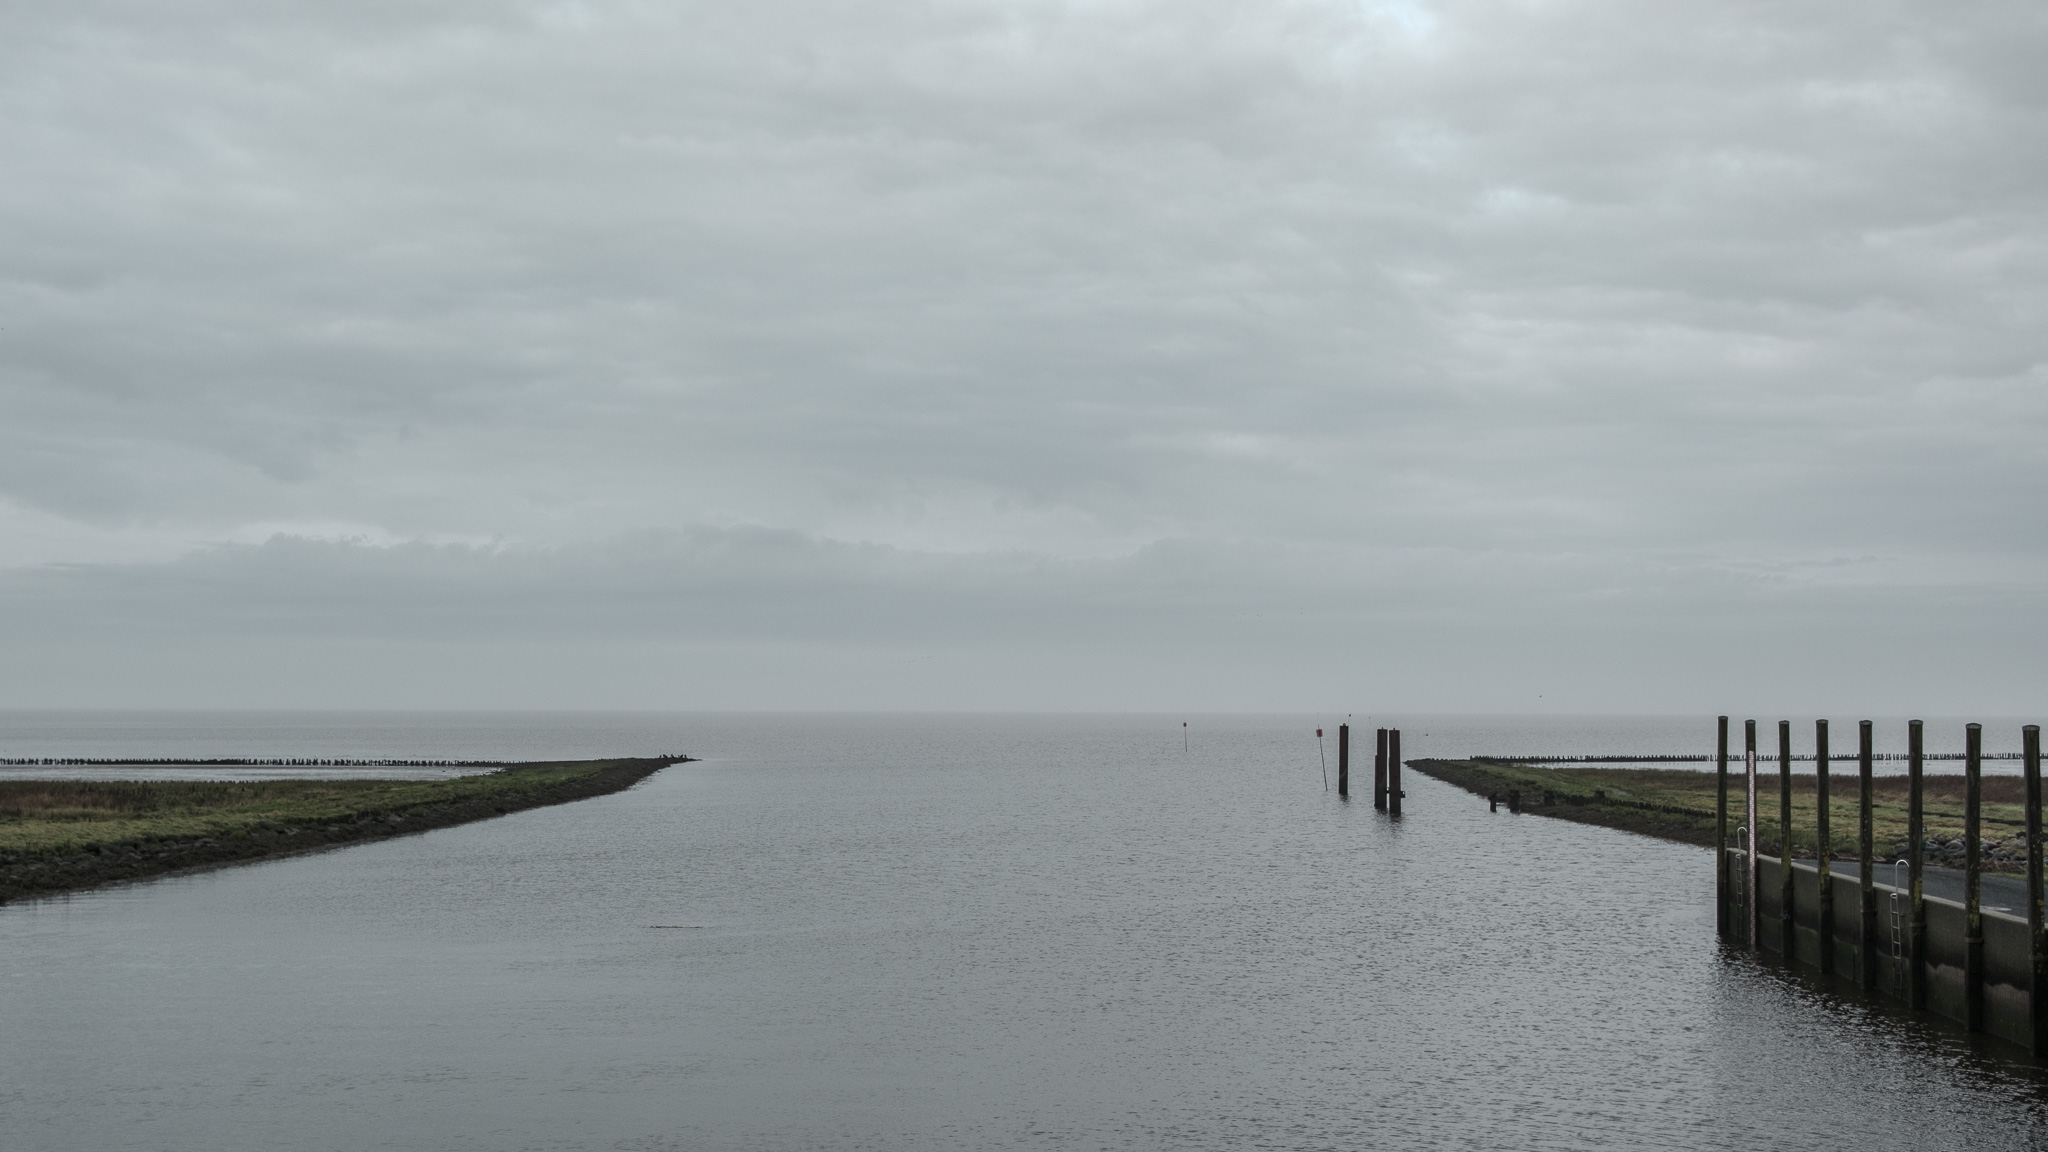 Blick von der Schleuse auf die Einfahrt auf das Wattenmeer hinaus, rechts stehen Poller, links ist der flache Uferbereich zu sehen, am Horizont der grau bedeckte Himmel.